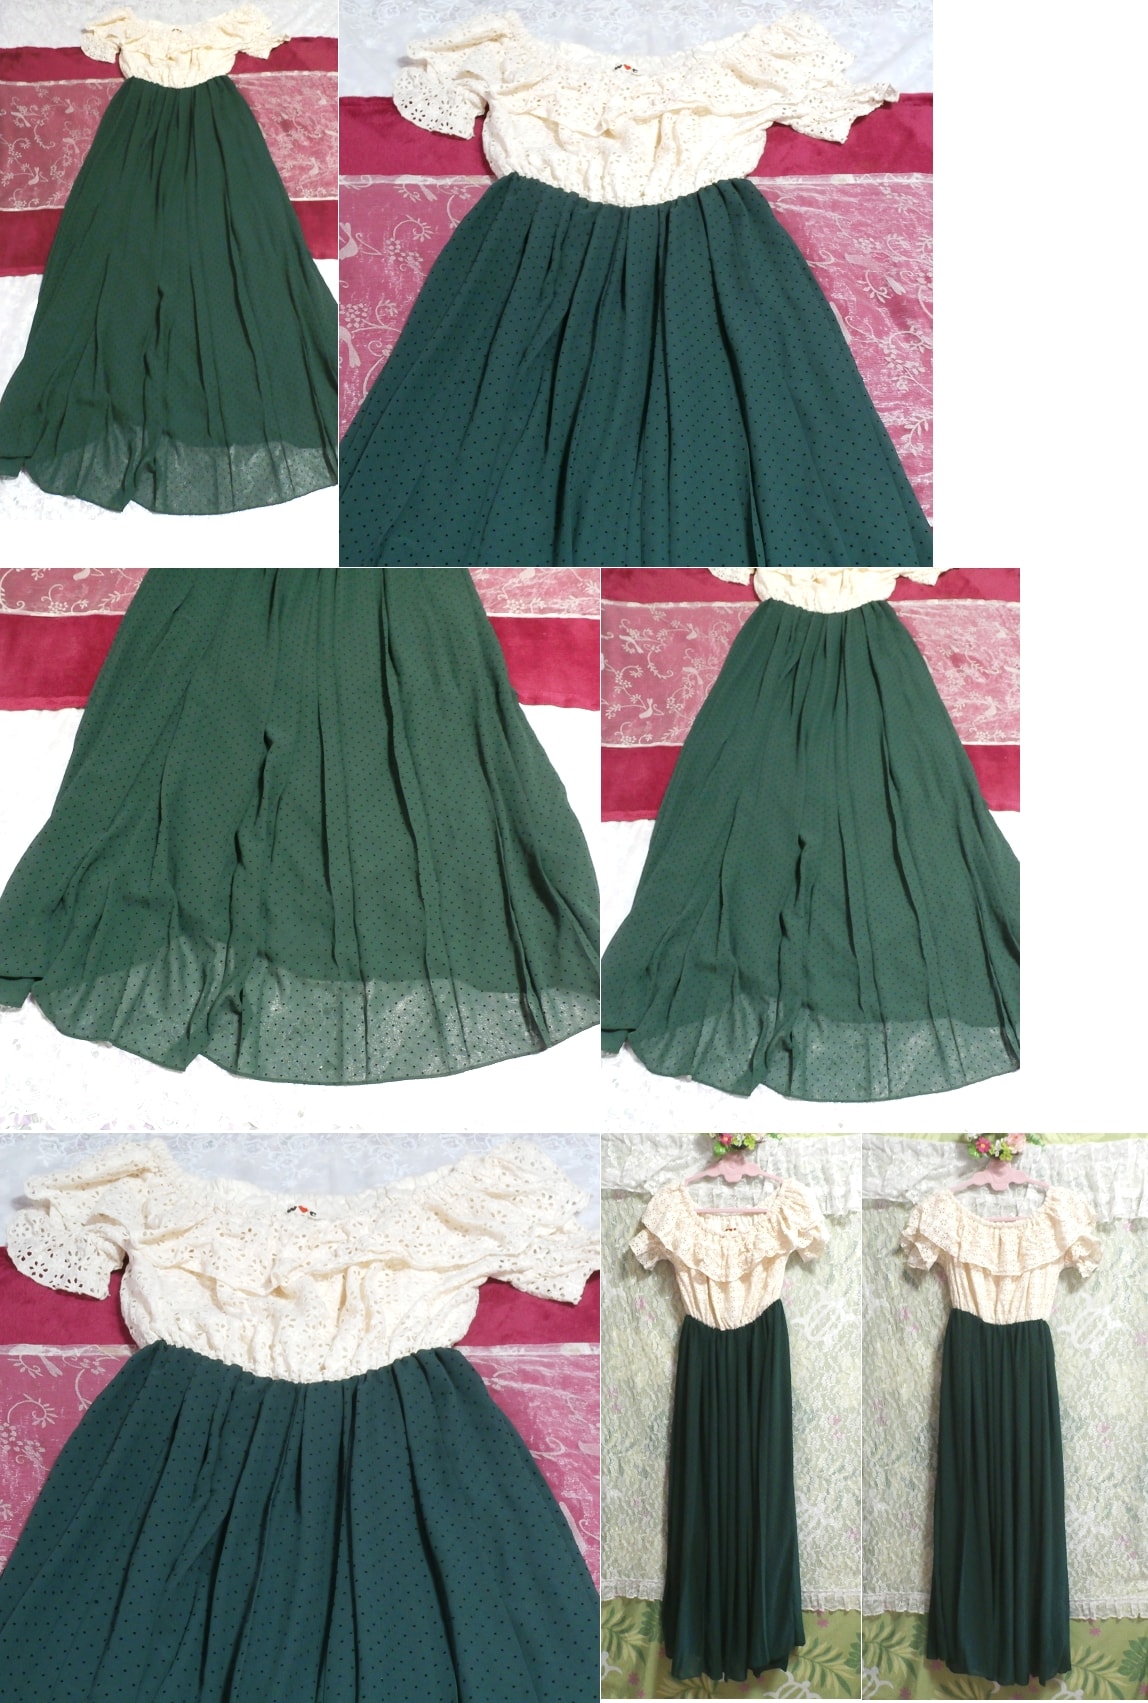 सफेद पुष्प सफेद लेस रोबे नाइटगाउन मैक्सी ड्रेस हरी शिफॉन स्कर्ट ड्रेस, लंबी लहंगा, मी आकार